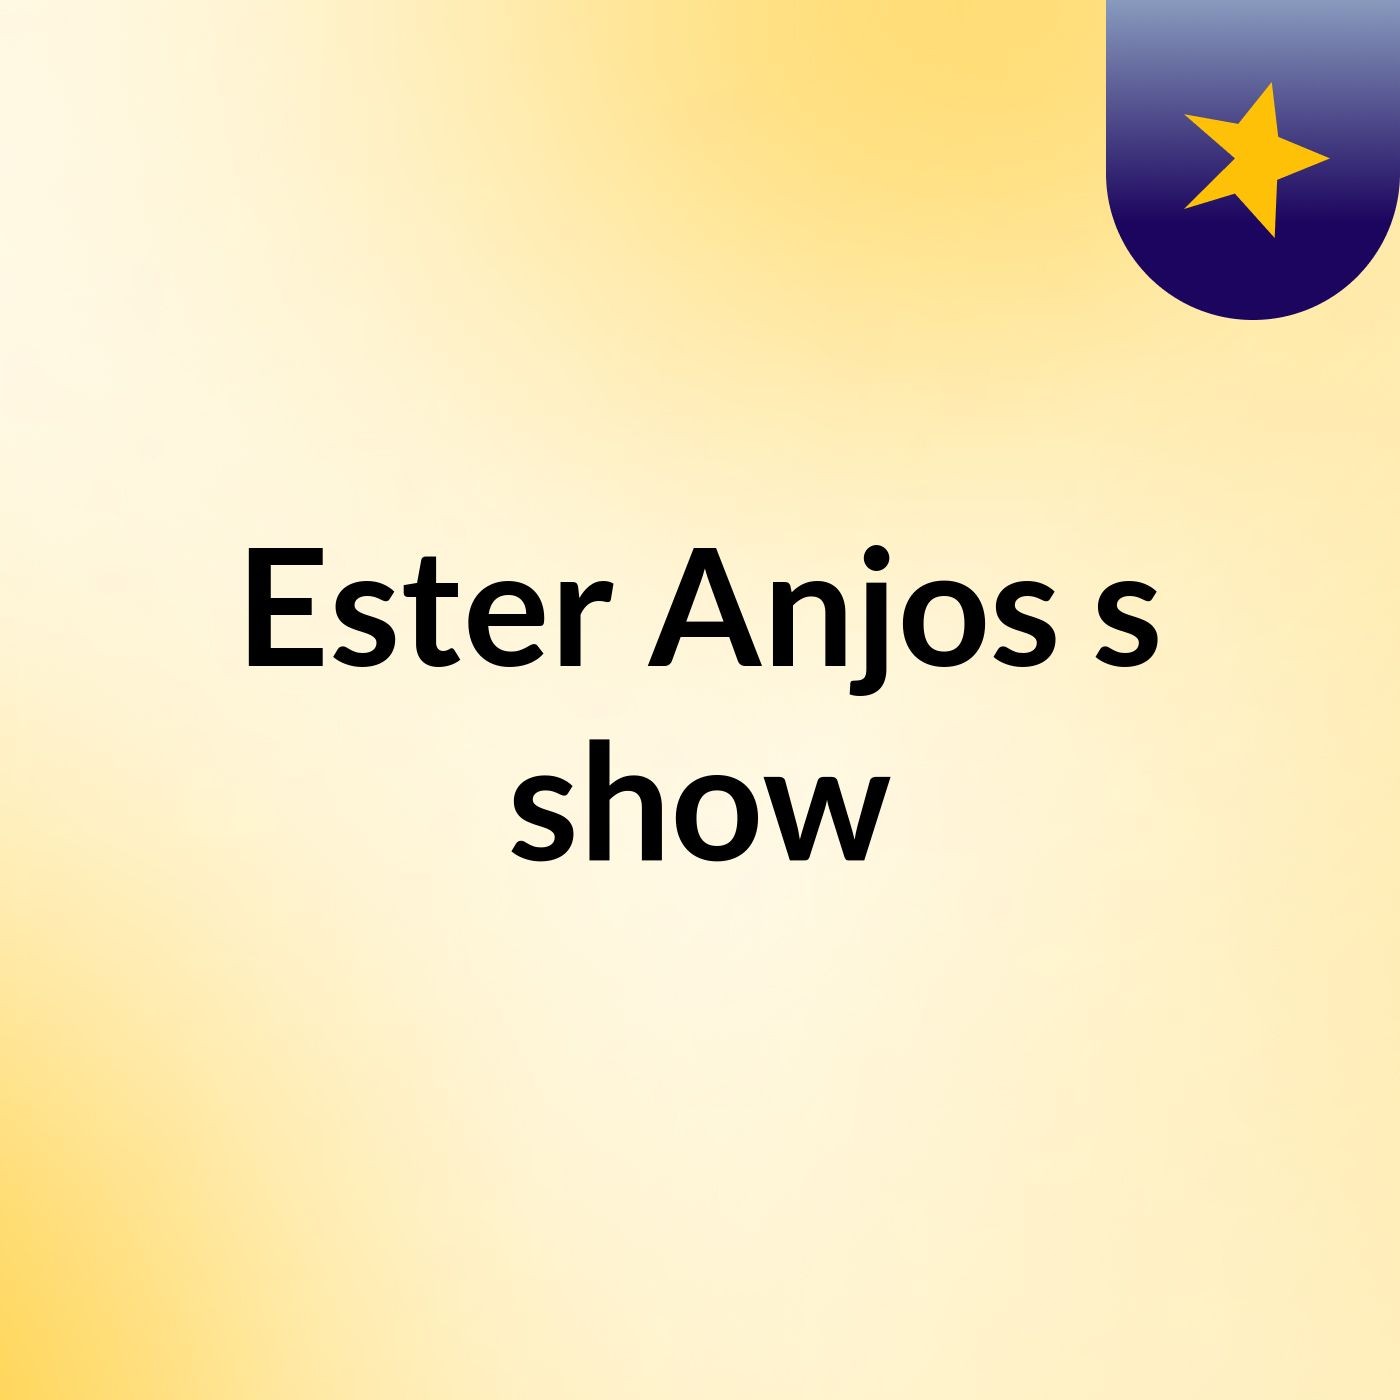 Ester Anjos's show